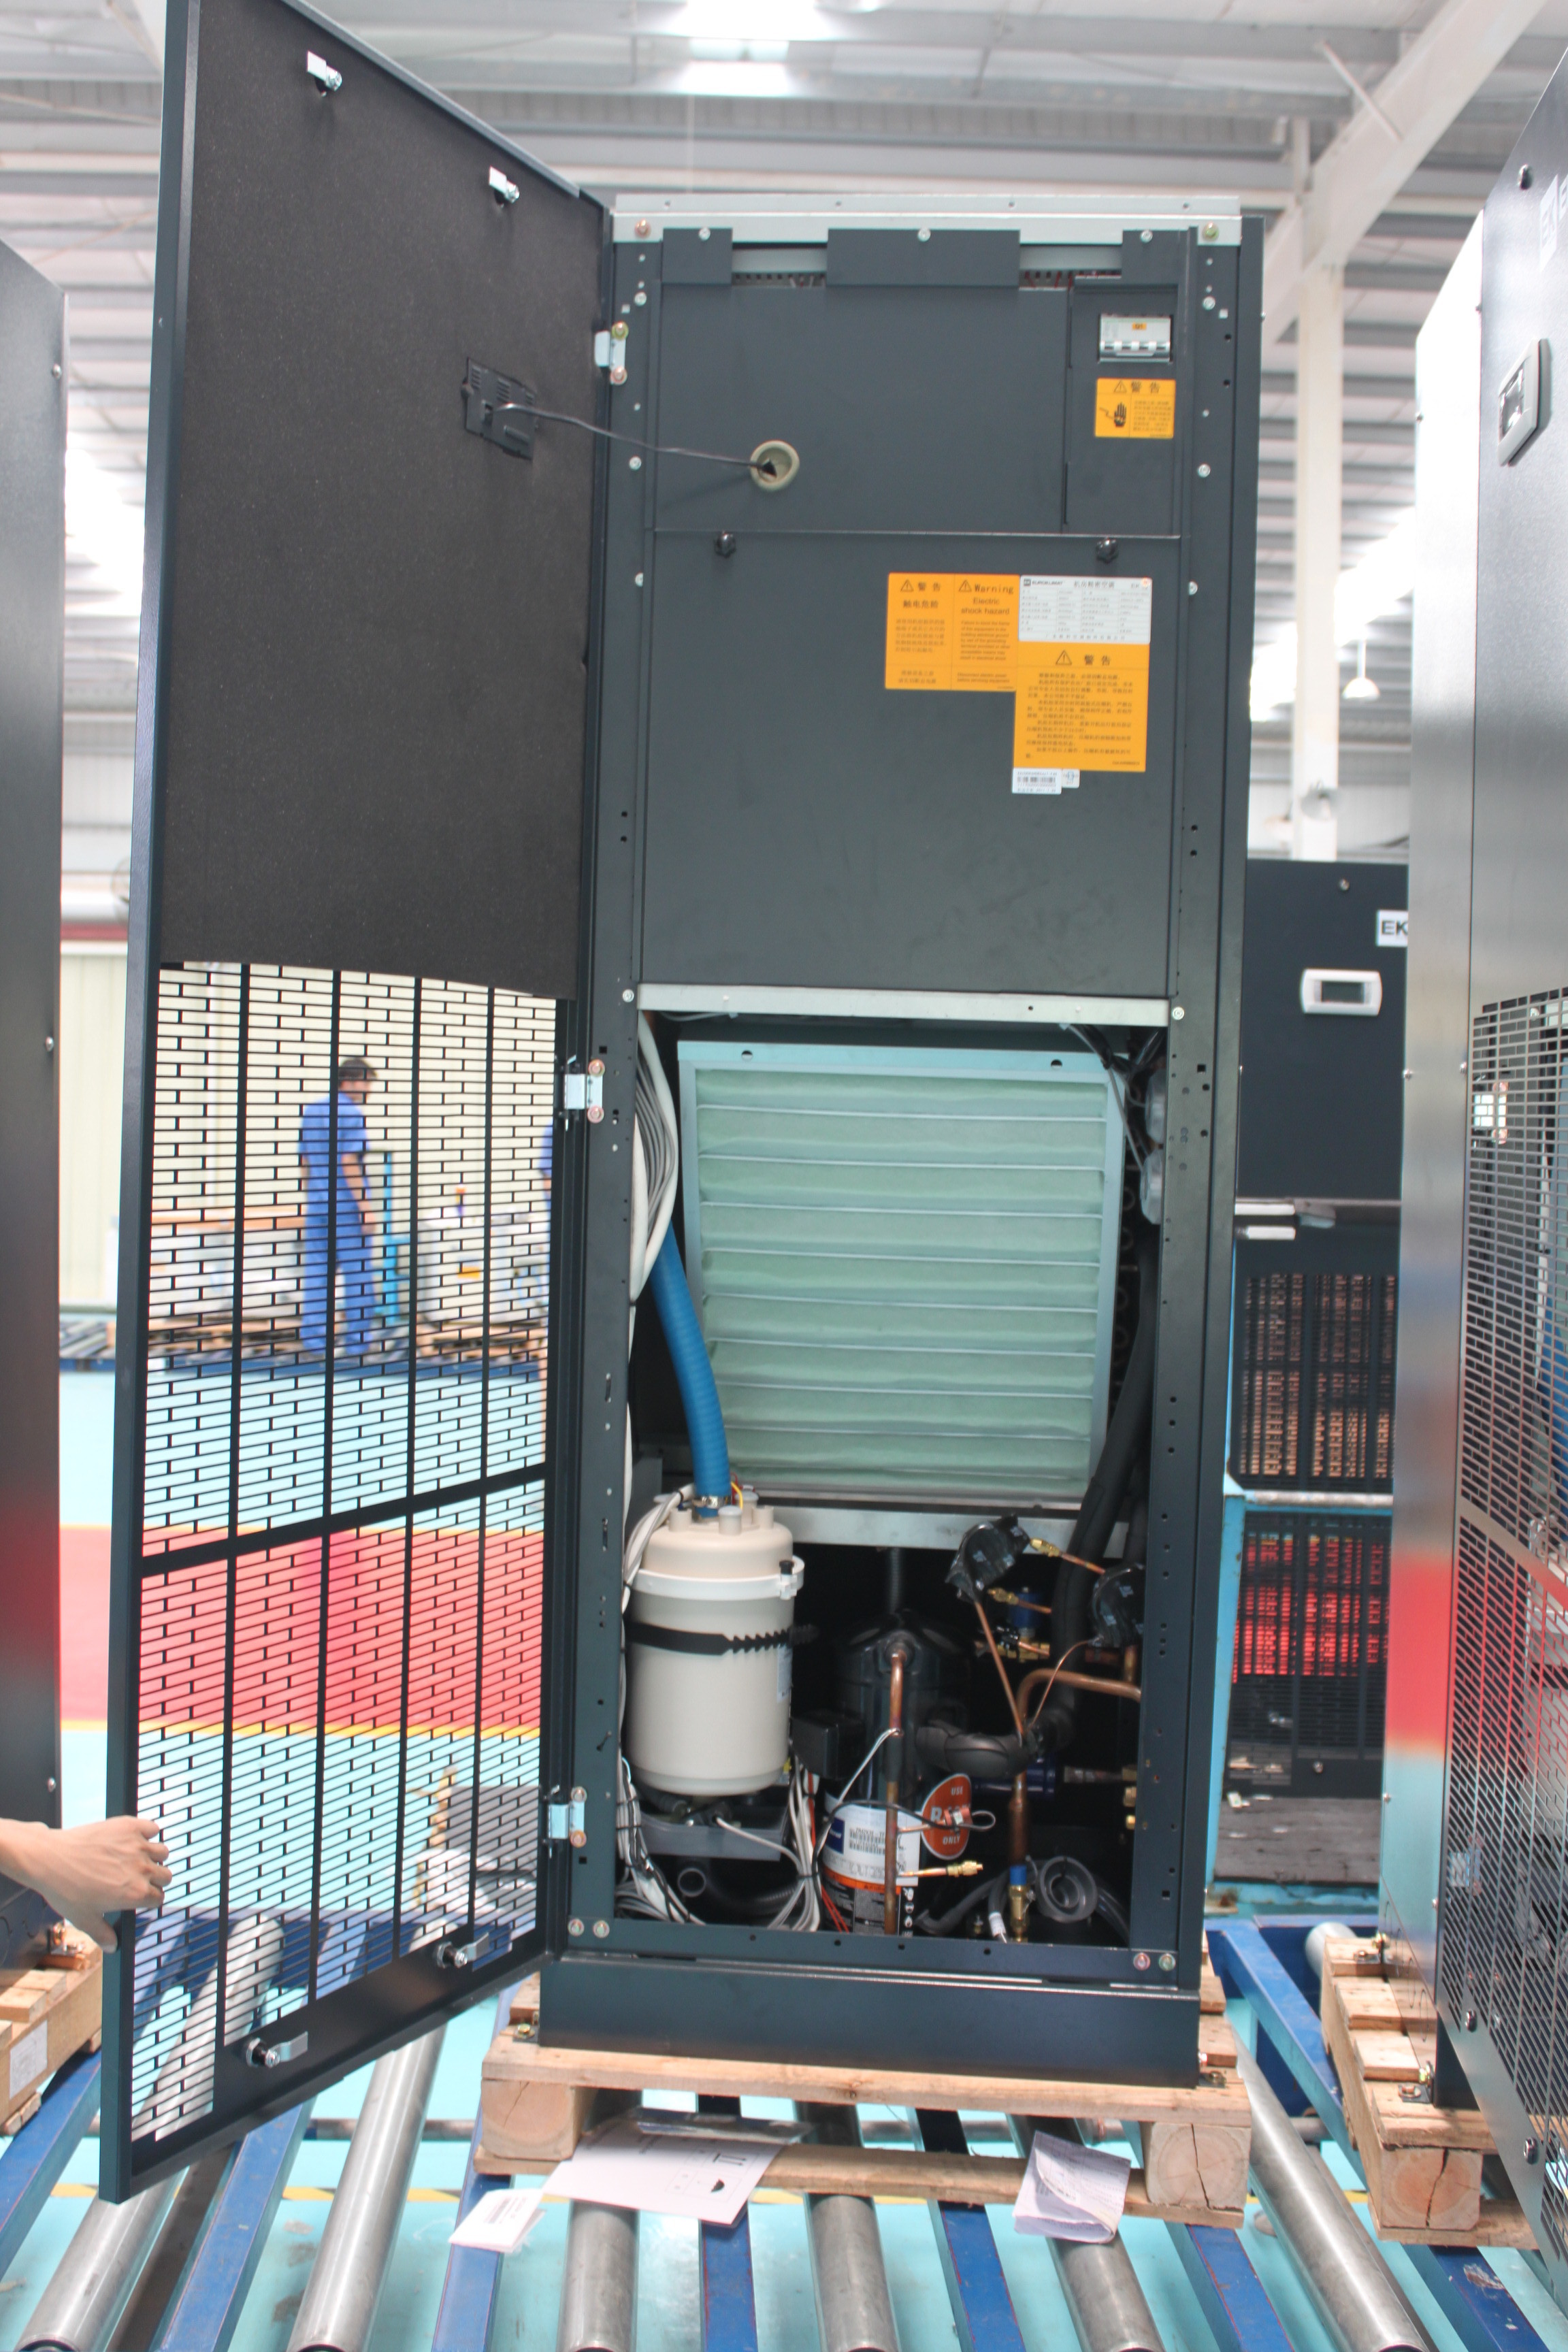 Przemysłowy precyzyjny klimatyzator chłodzony wodą o mocy 34,9 kW do serwerowni